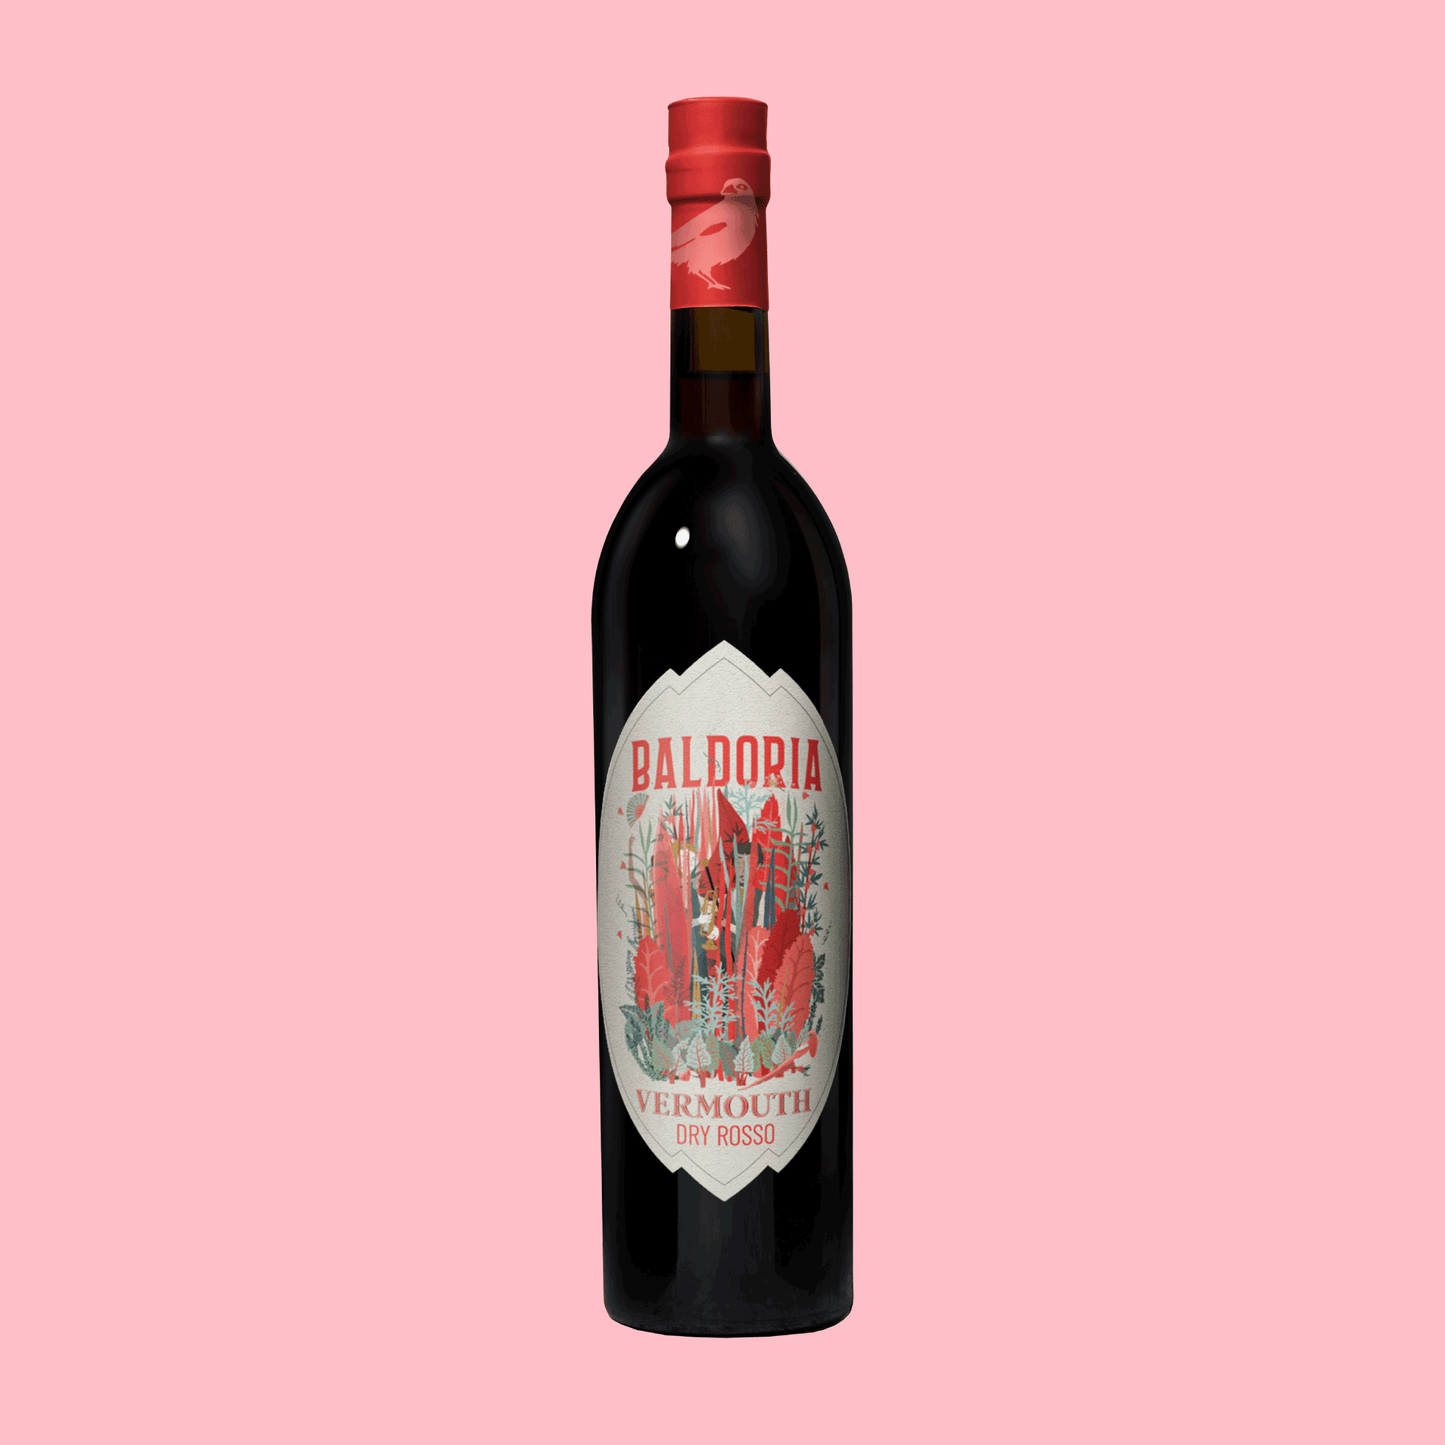 BALDORIA - Vermouth Dry Rosso